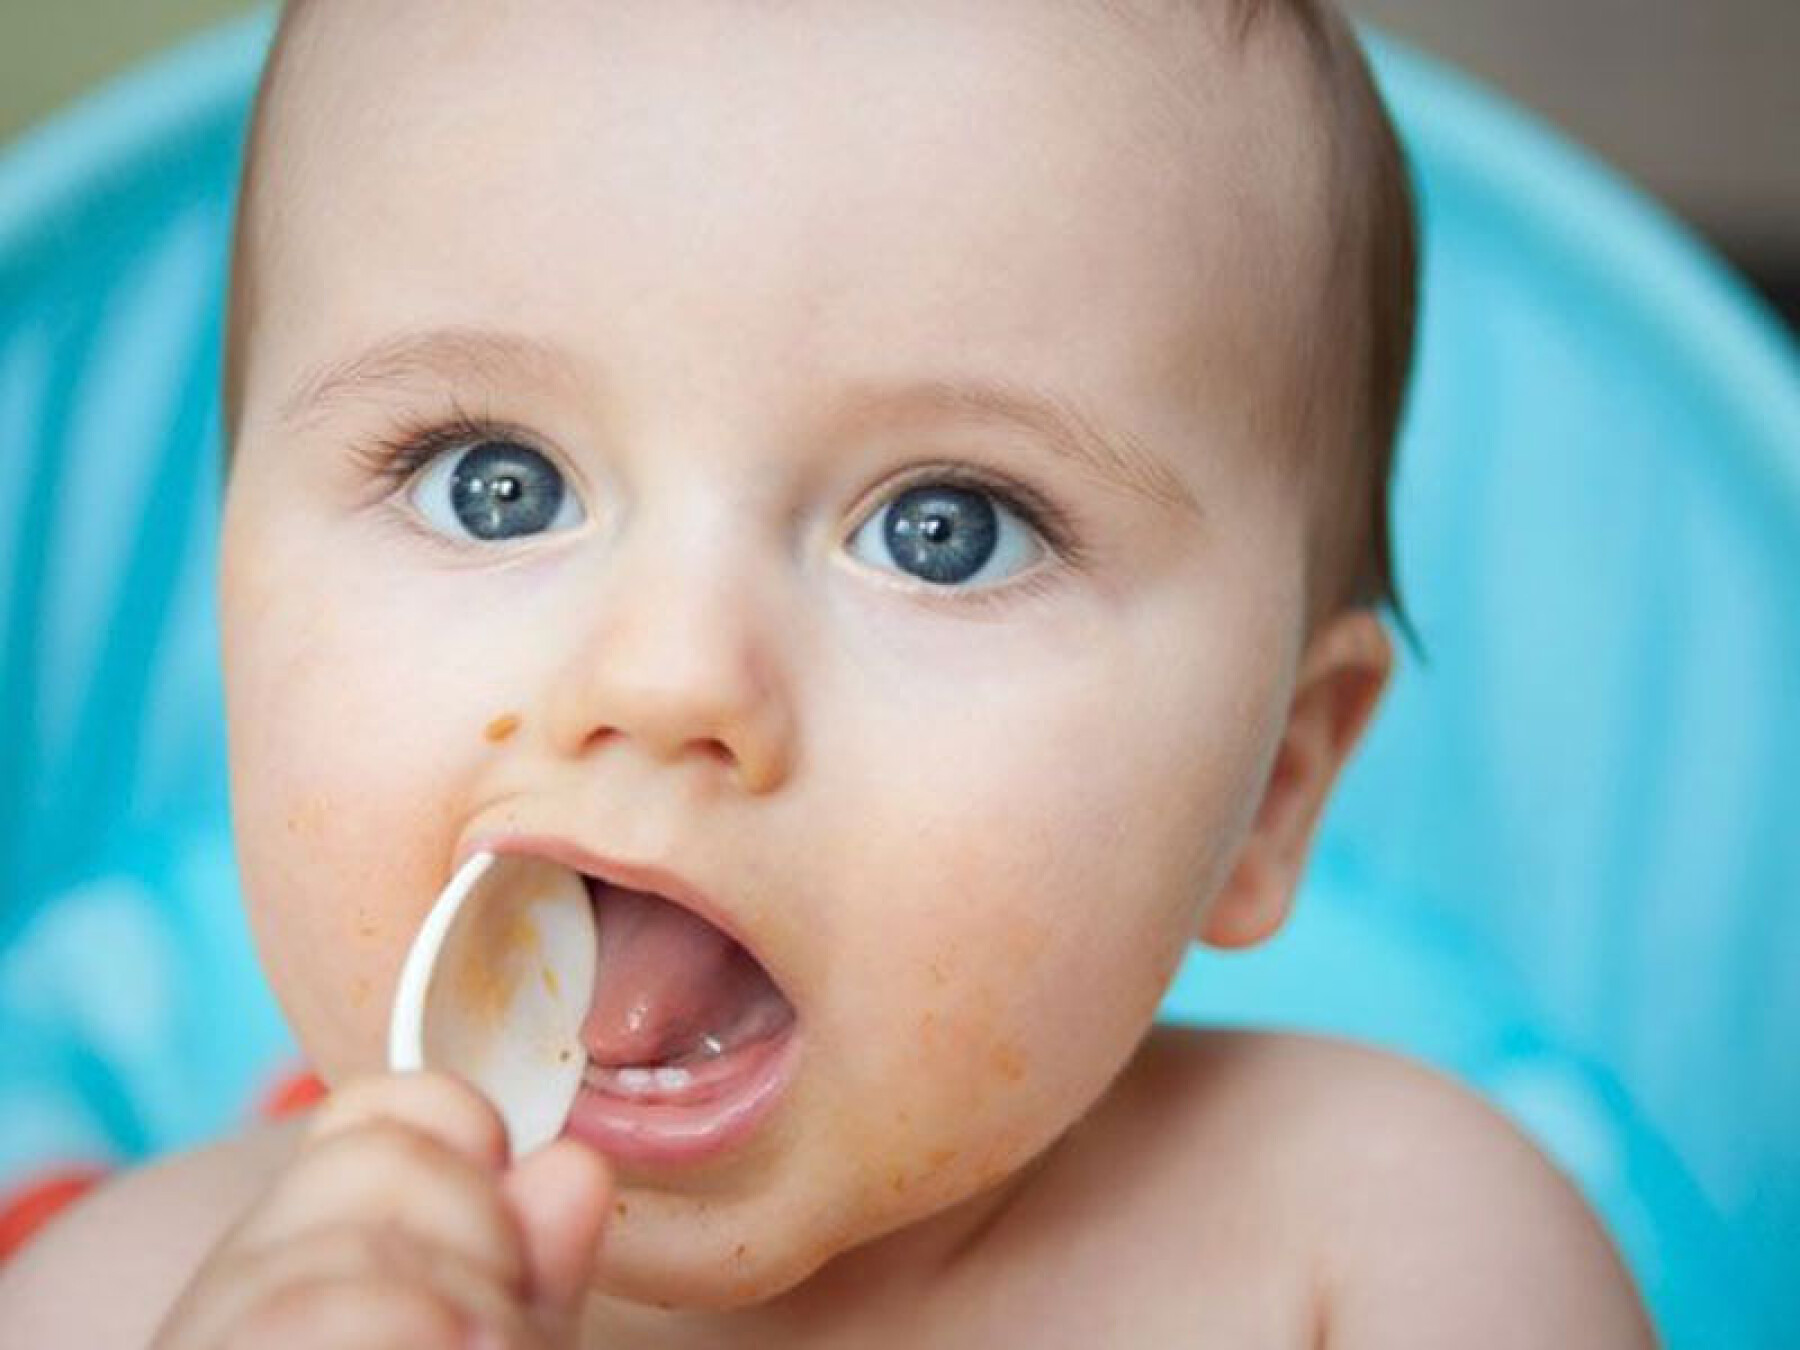 Repas de bébé : les astuces de mamans